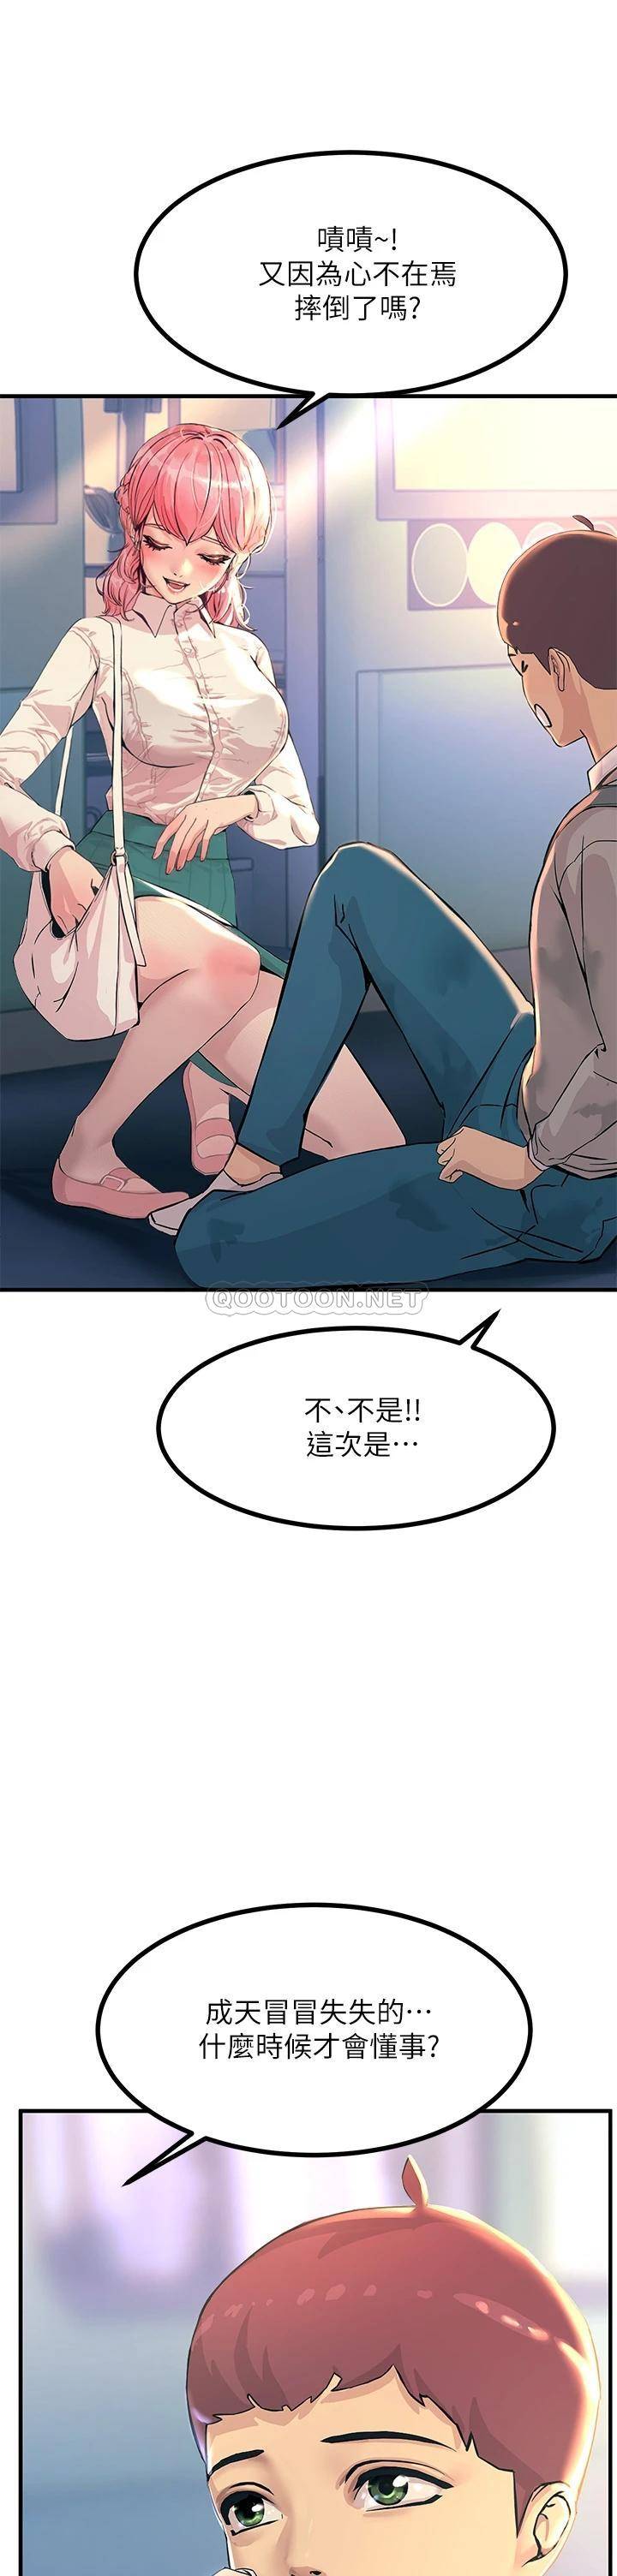 韩国污漫画 觸電大師 第2话 和性感胴体的亲密接触 11